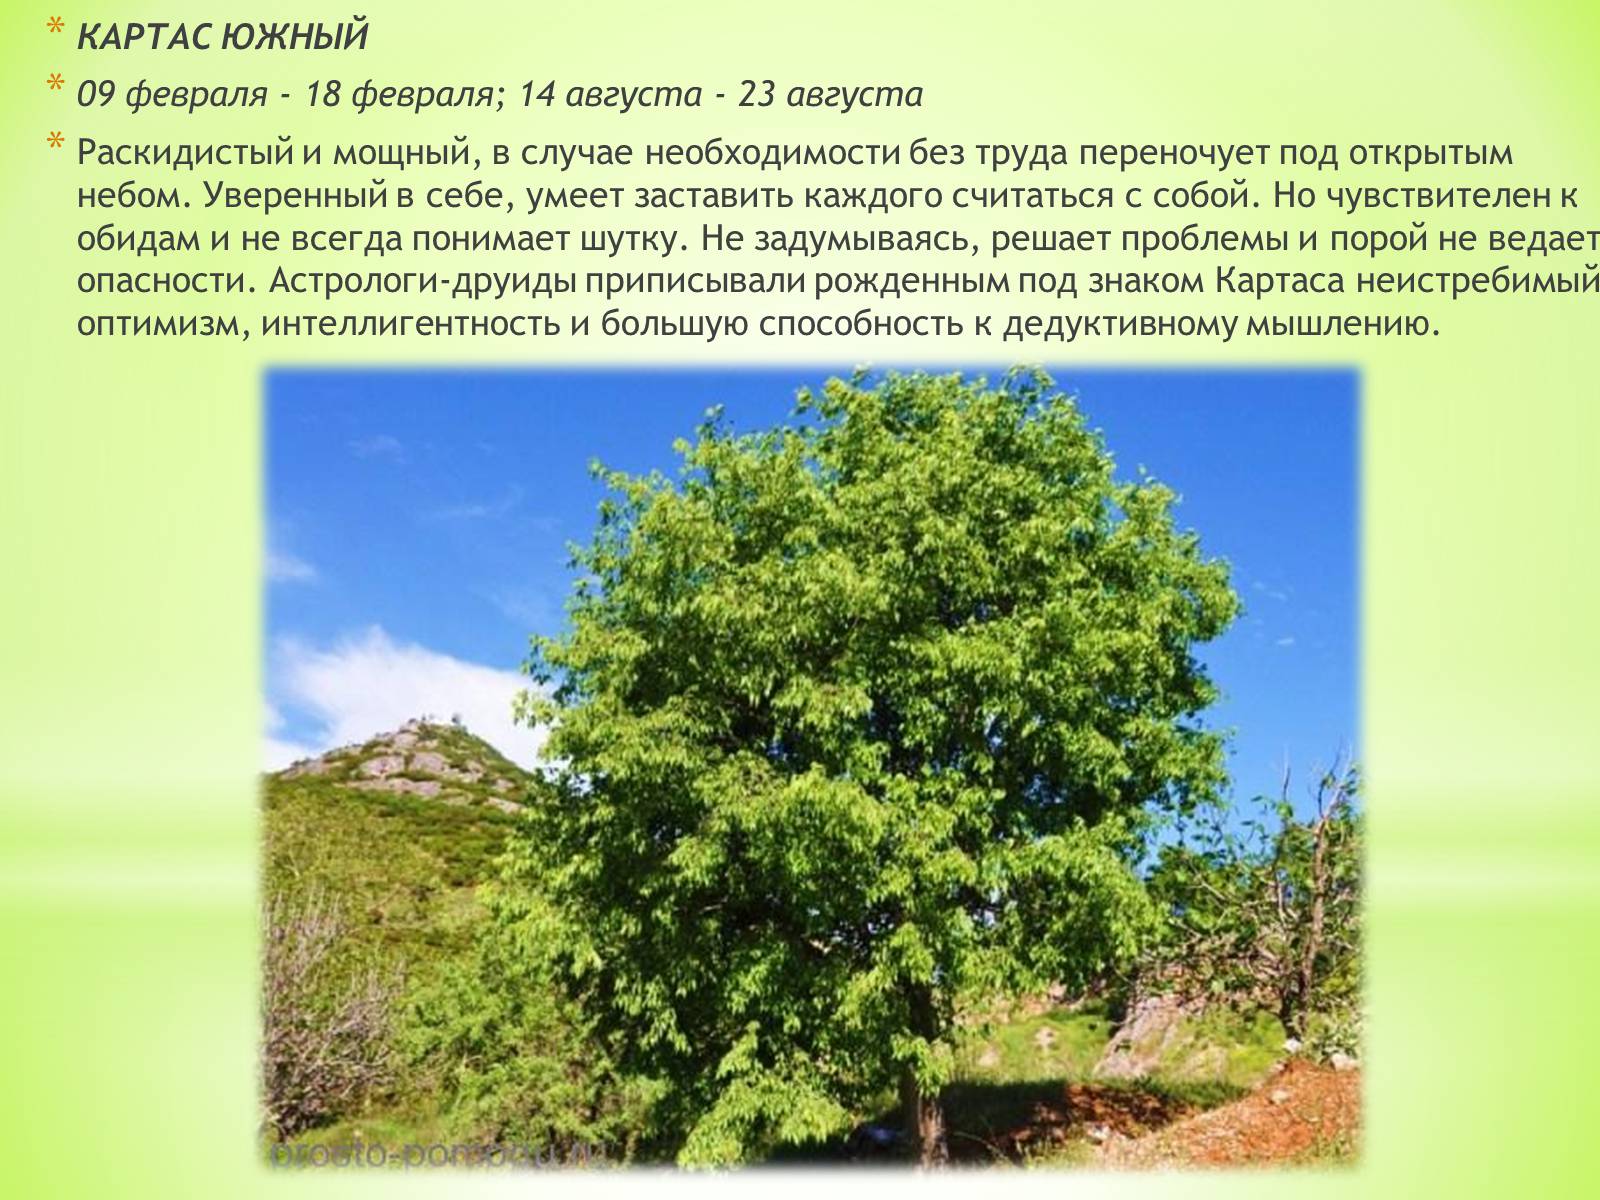 Дерево картас фото и описание где растет